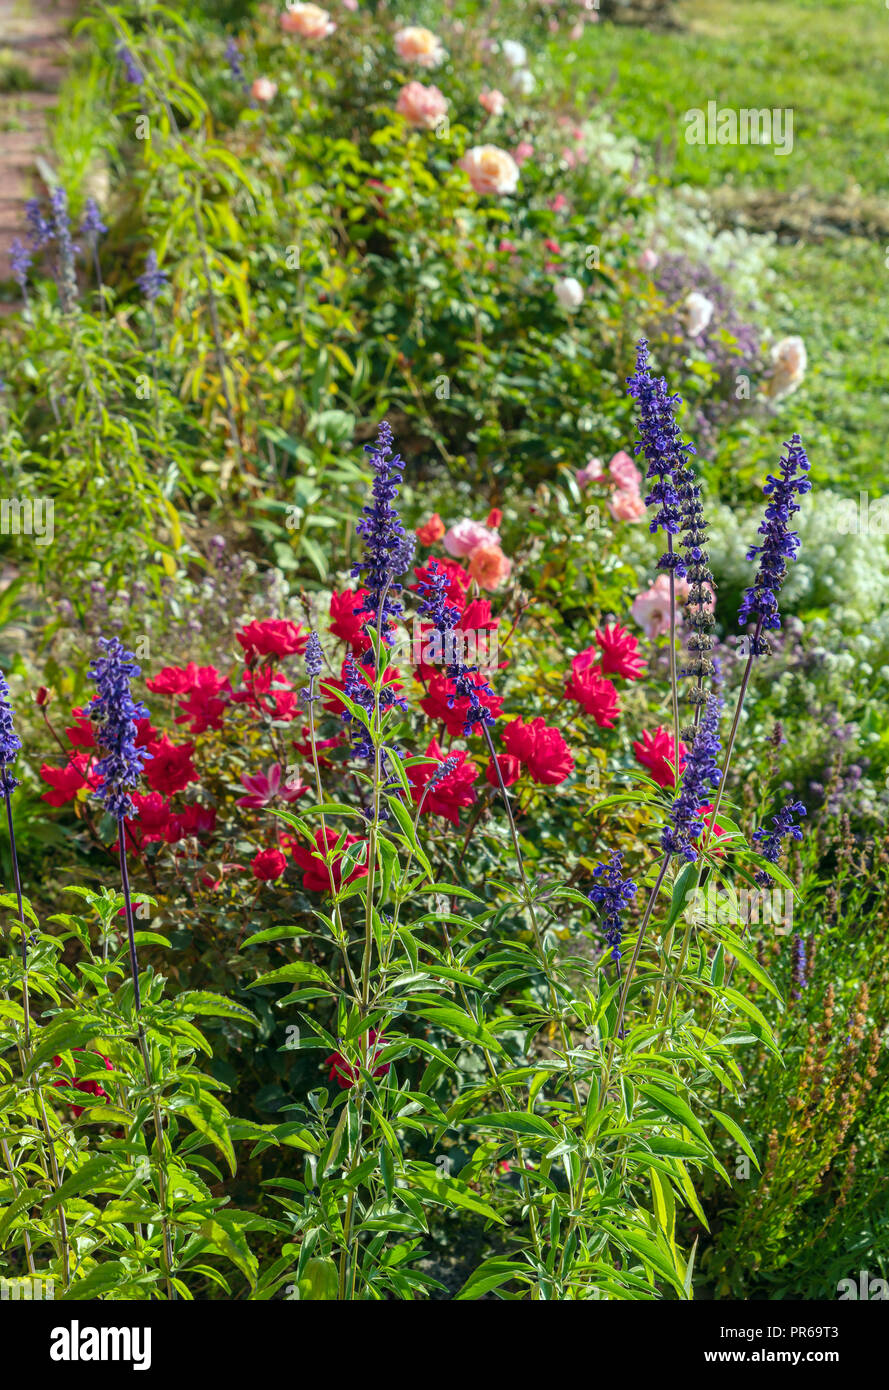 Blumen blau Salbei und Rosen im Sommer Garten, Landschaft Design und Gartenarbeit Stockfoto